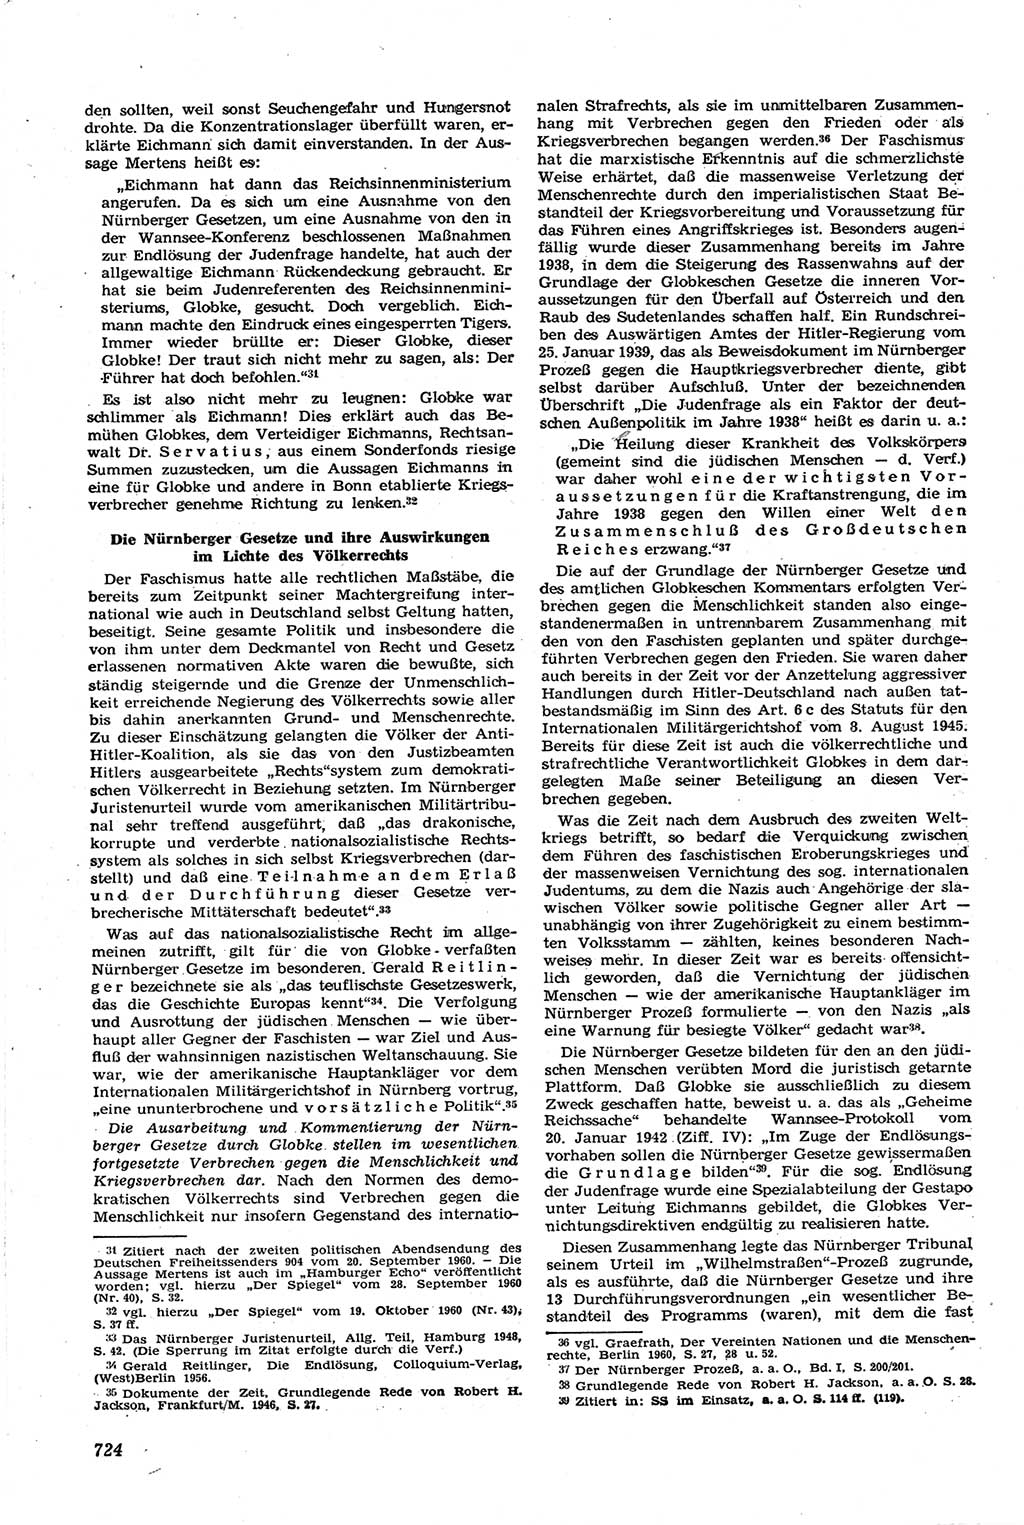 Neue Justiz (NJ), Zeitschrift für Recht und Rechtswissenschaft [Deutsche Demokratische Republik (DDR)], 14. Jahrgang 1960, Seite 724 (NJ DDR 1960, S. 724)